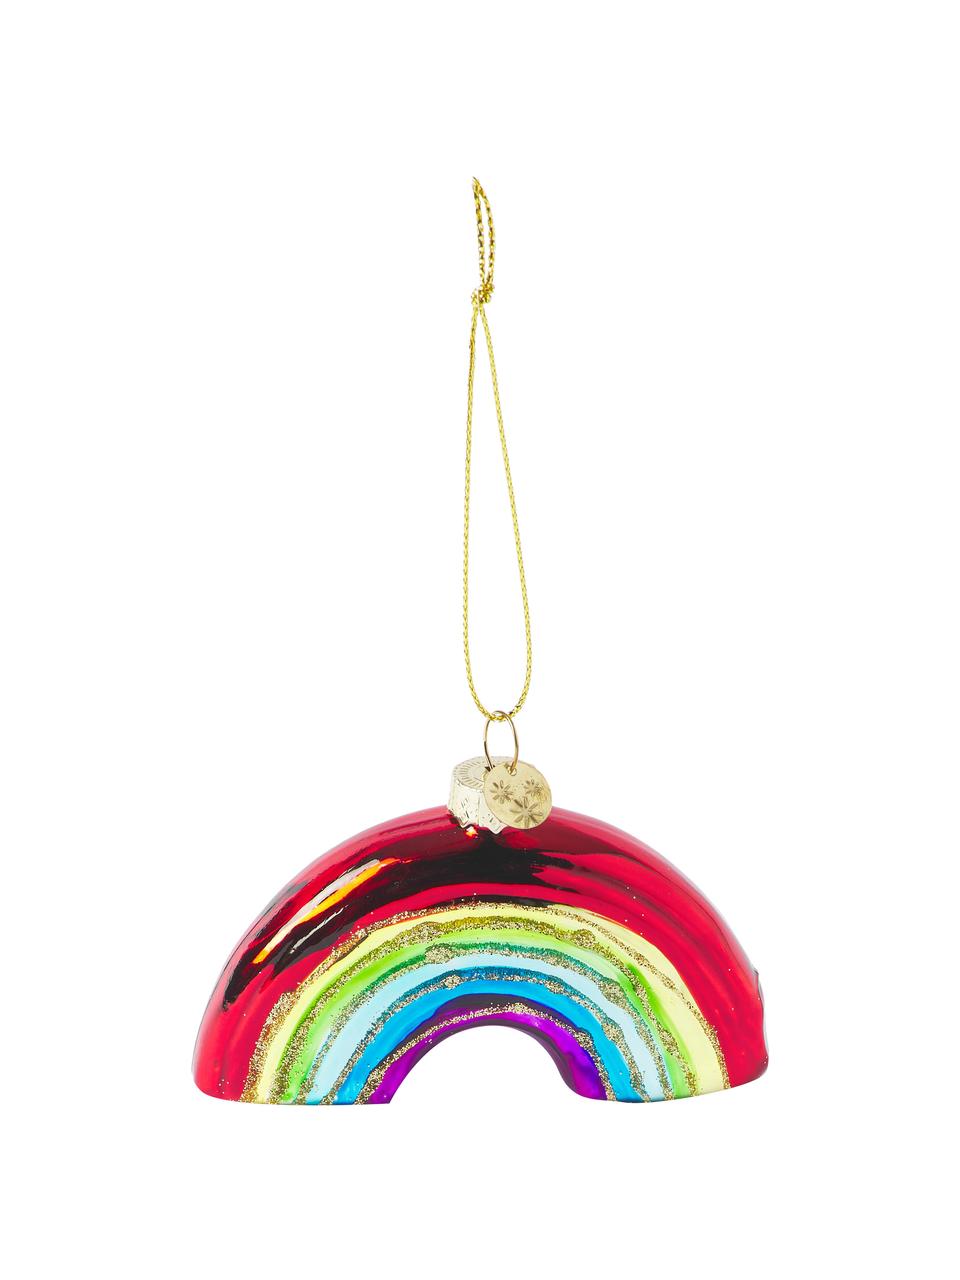 Adorno navideño de vidrio soplado artesanalmente Rainbow, Vidrio, Multicolor, An 10 x Al 7 cm